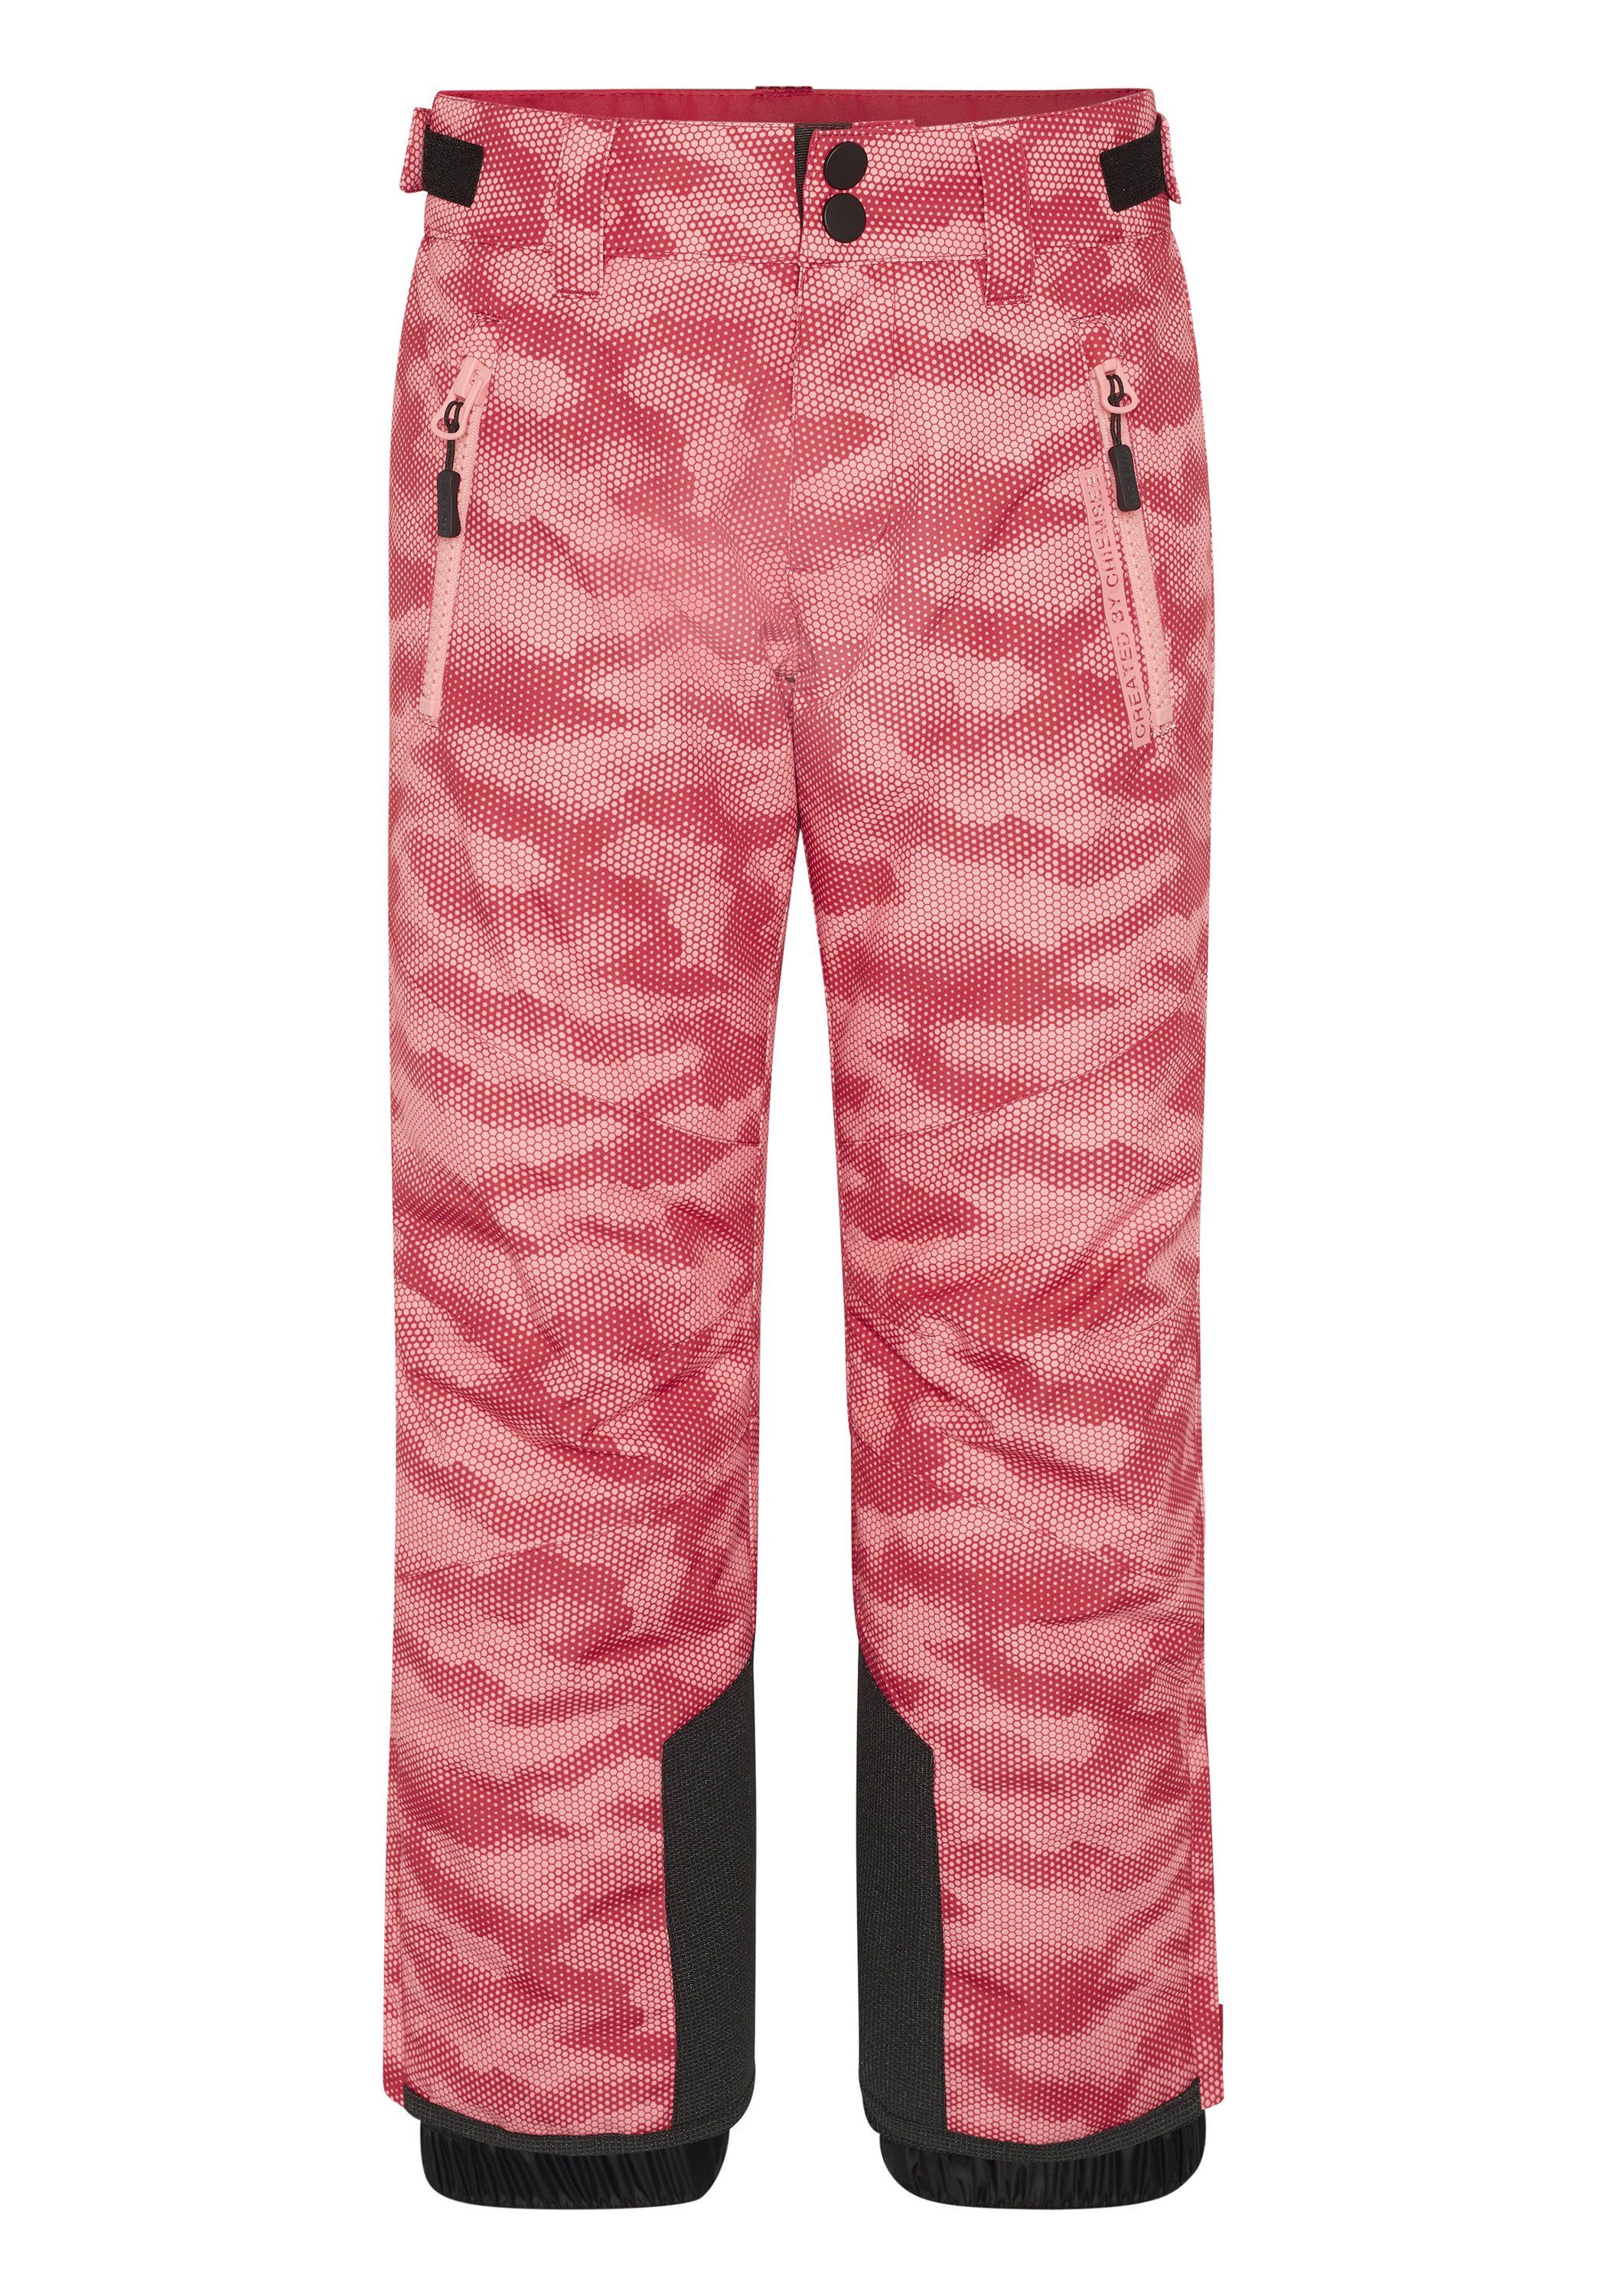 Chiemsee Sporthose Skihose mit seitlichen Reißverschlusstaschen 1 hell rosa/rosa